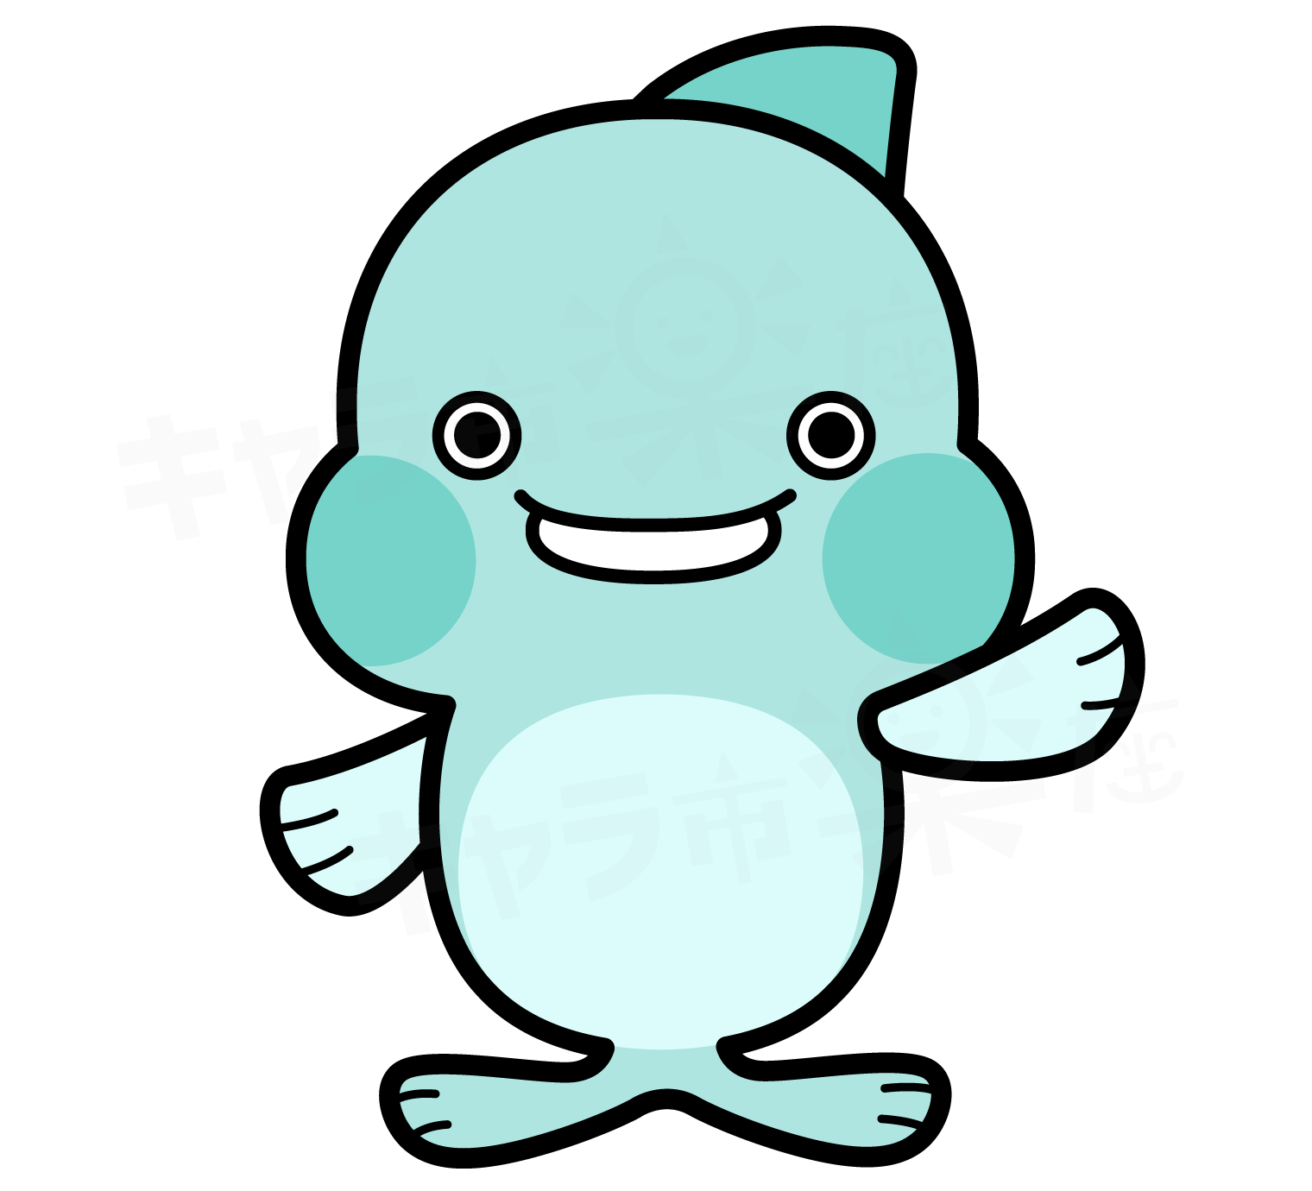 魚のキャラクター「ウオッチン」